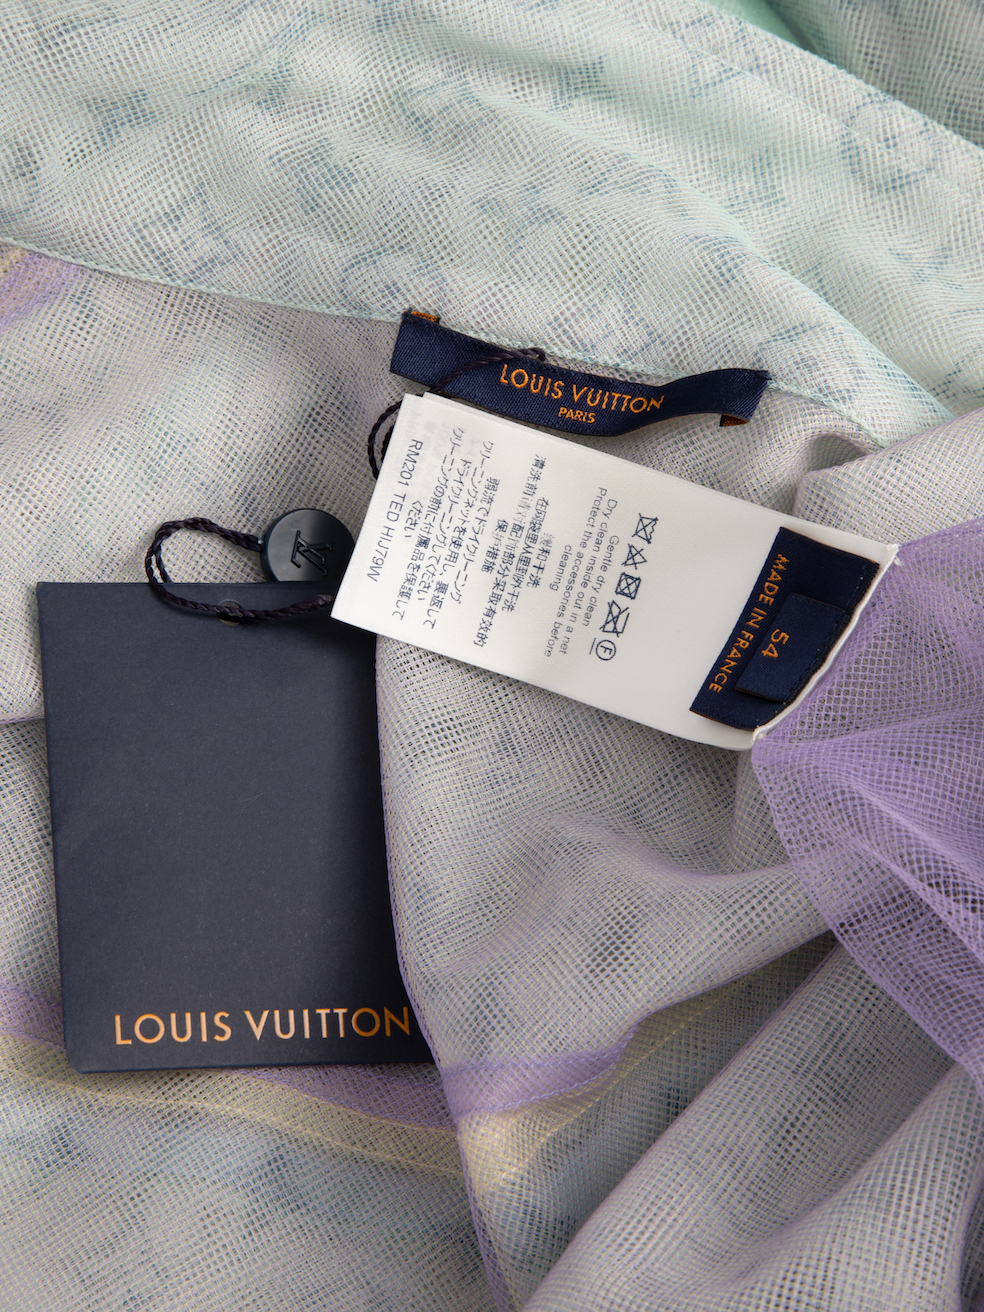 Louis Vuitton Multicolor Tulle Denim Jacket 100% authentic size 56